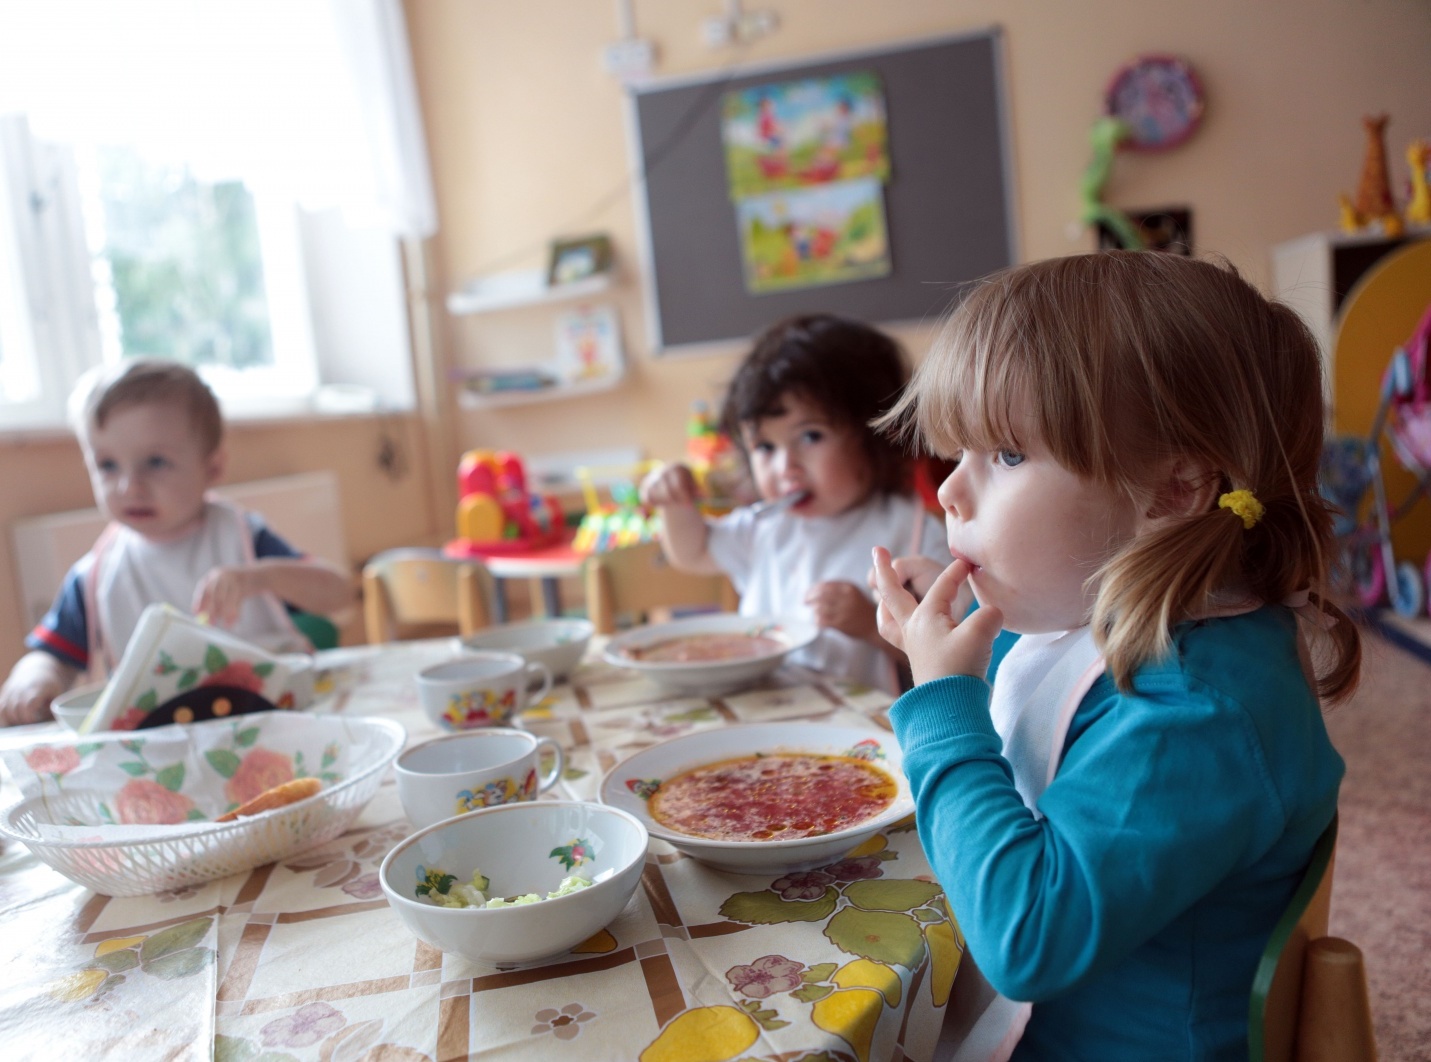 Сливочное масло, предназначенное для питания в одном из детских садов Ярославской области, не прошло лабораторную проверку